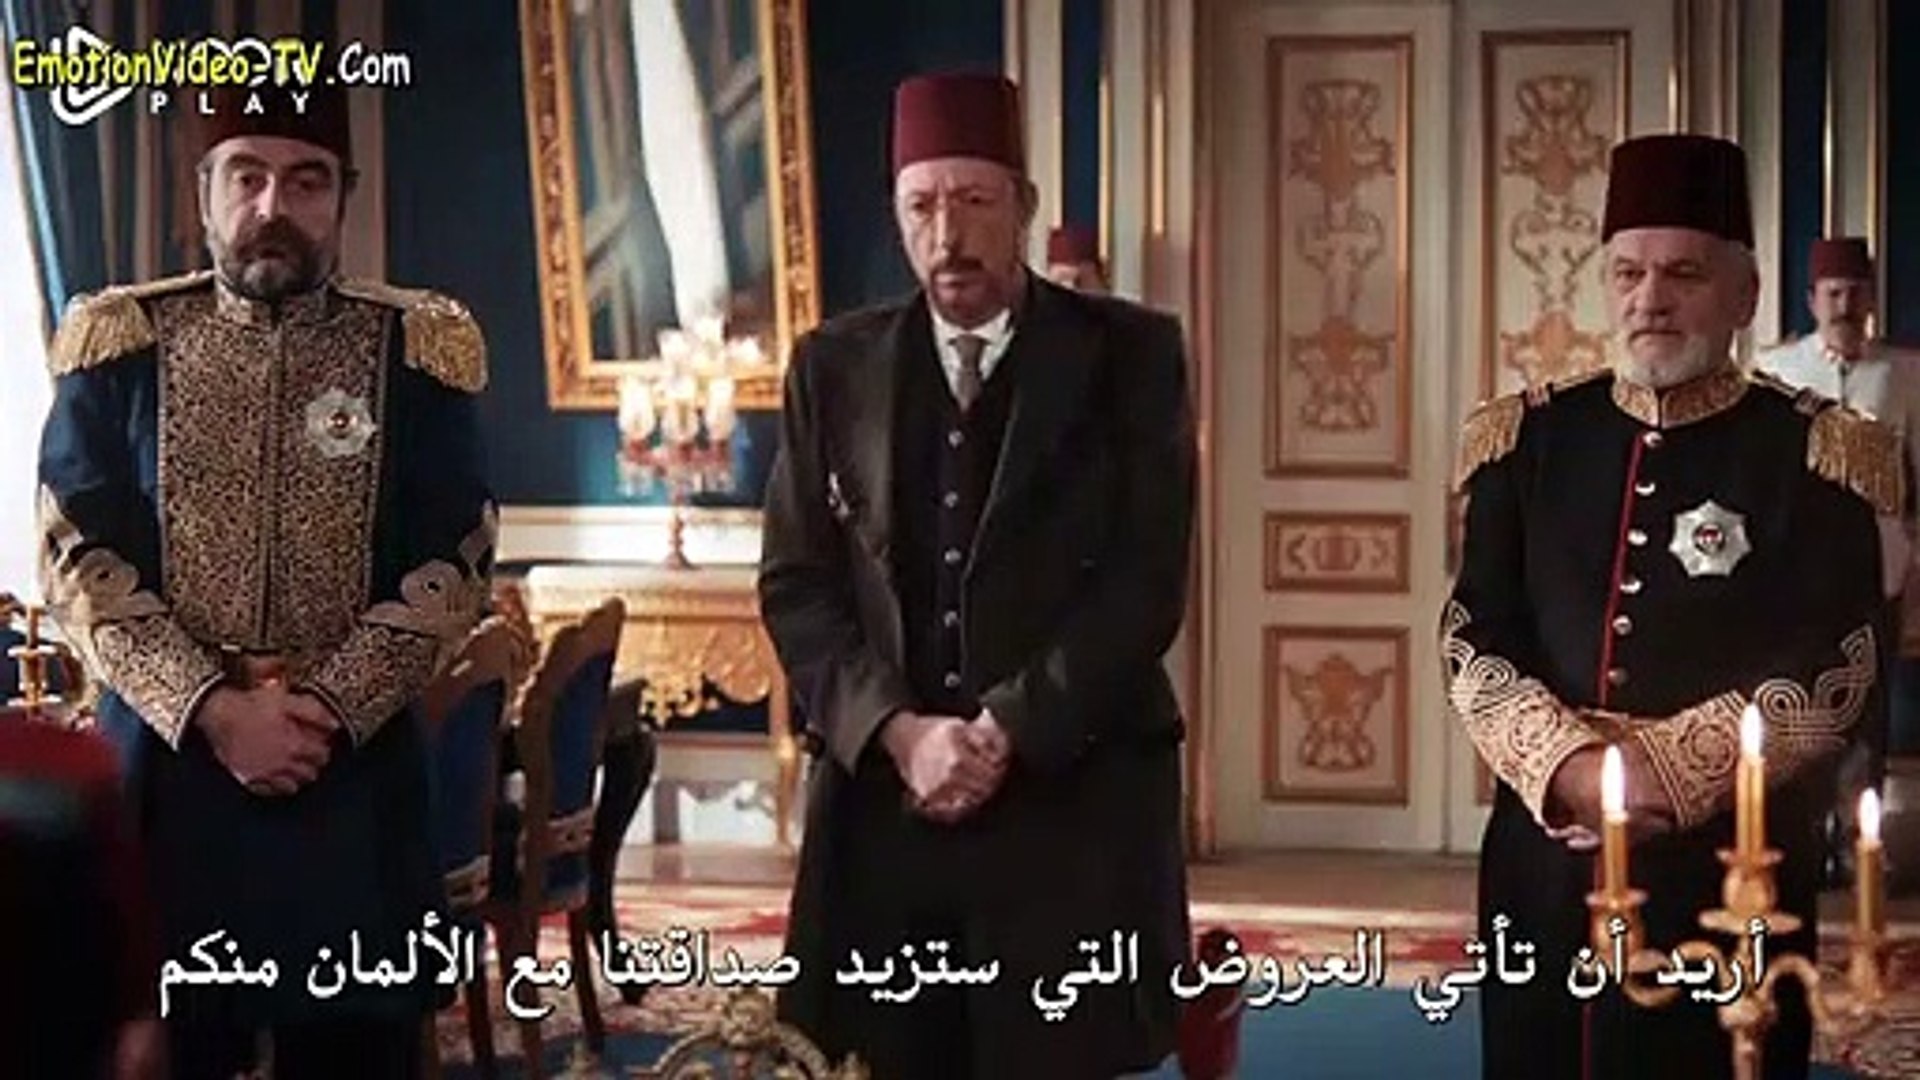 مسلسل السلطان عبد الحميد الحلقة 111 القسم الأول مترجم لـ العربية Video Dailymotion